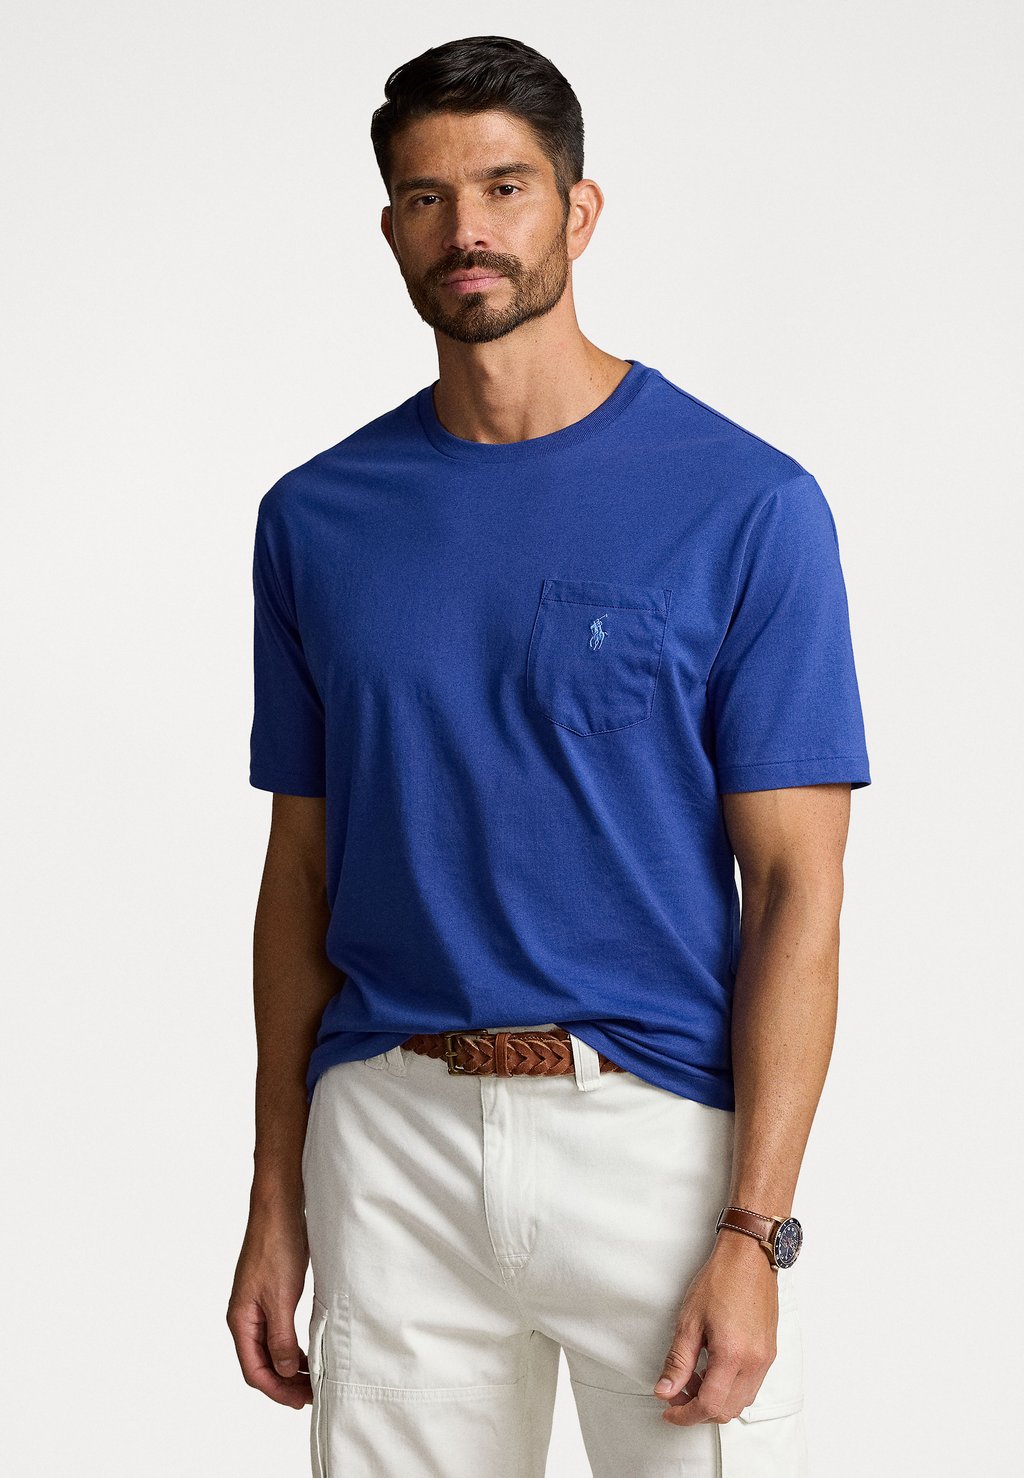 Базовая футболка Polo Ralph Lauren Big & Tall, Королевский синий низкие кроссовки aera lace unisex polo ralph lauren мягкий серый черный королевский